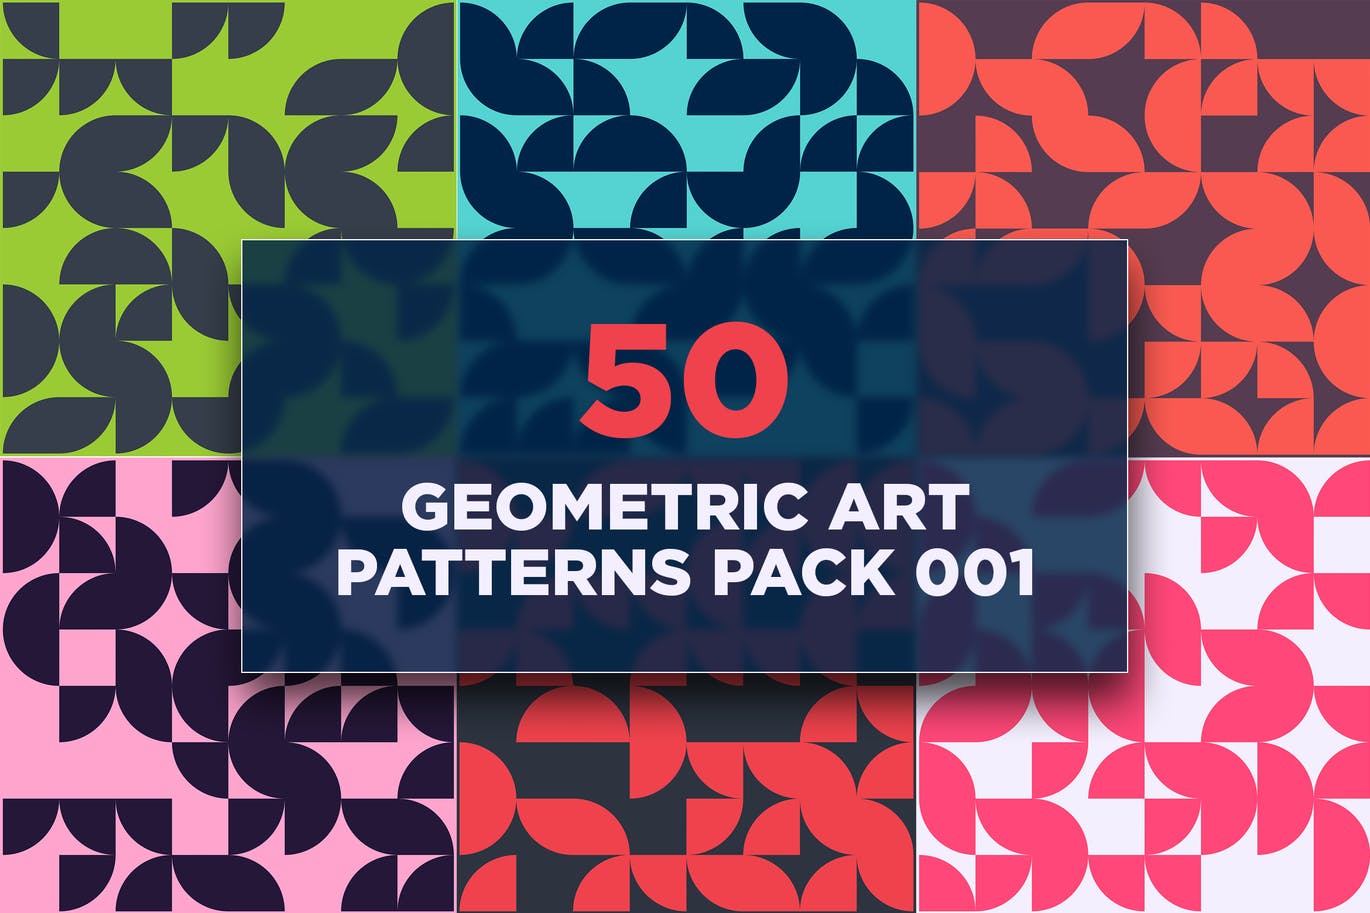 50个几何艺术图案包v1 50 Geometric Art Patterns Pack 001 图片素材 第1张